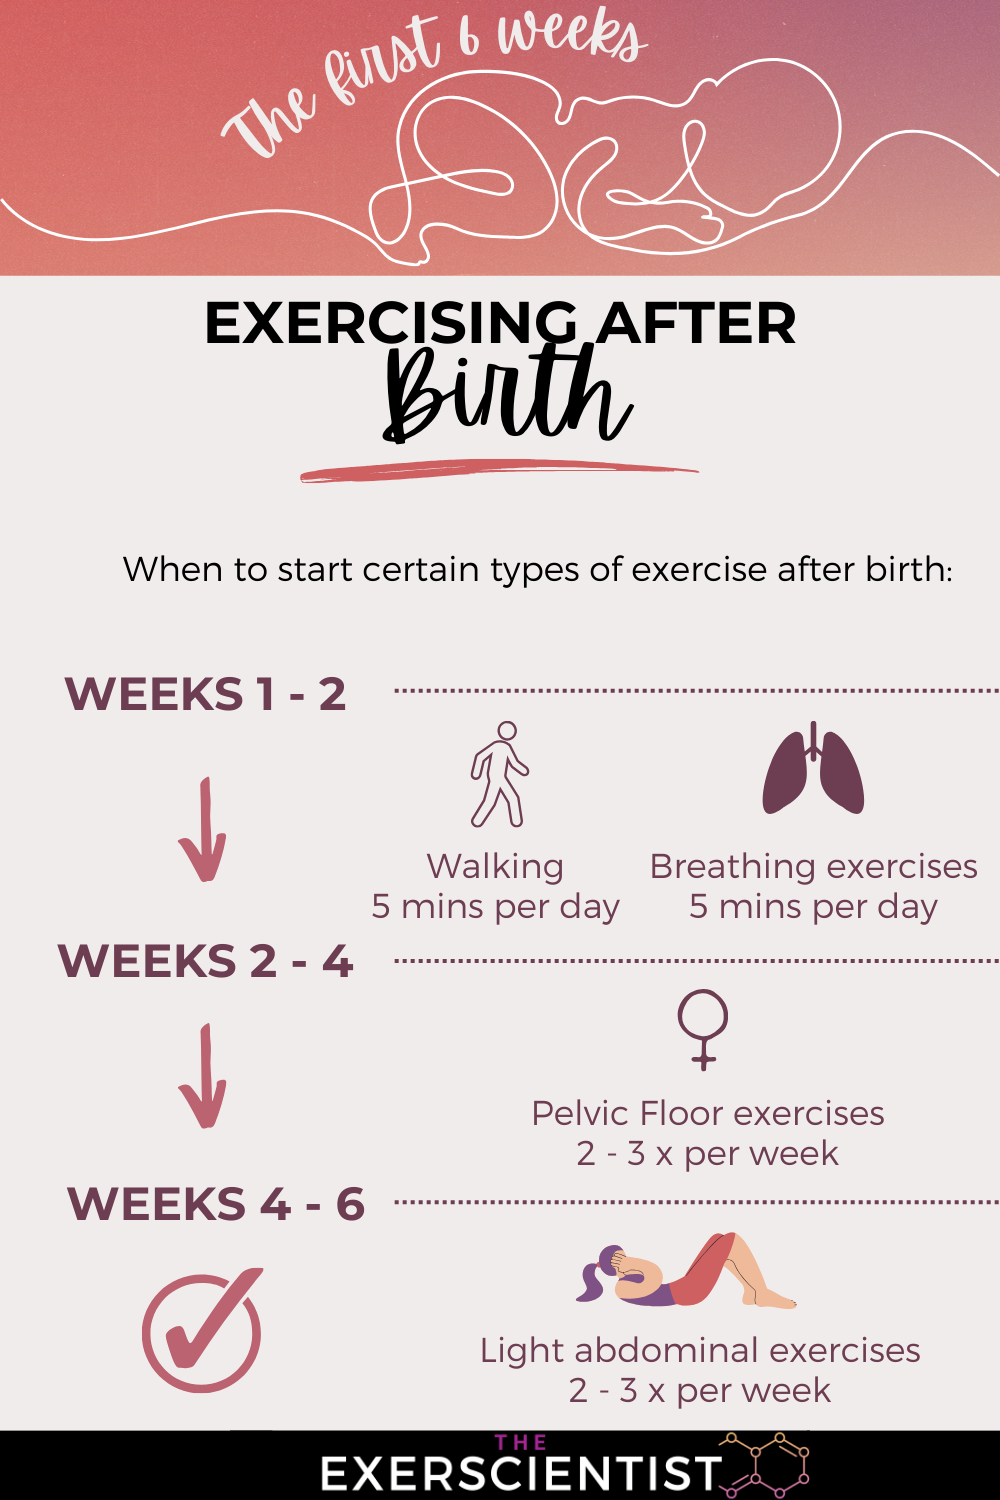 Newborns & Exercise